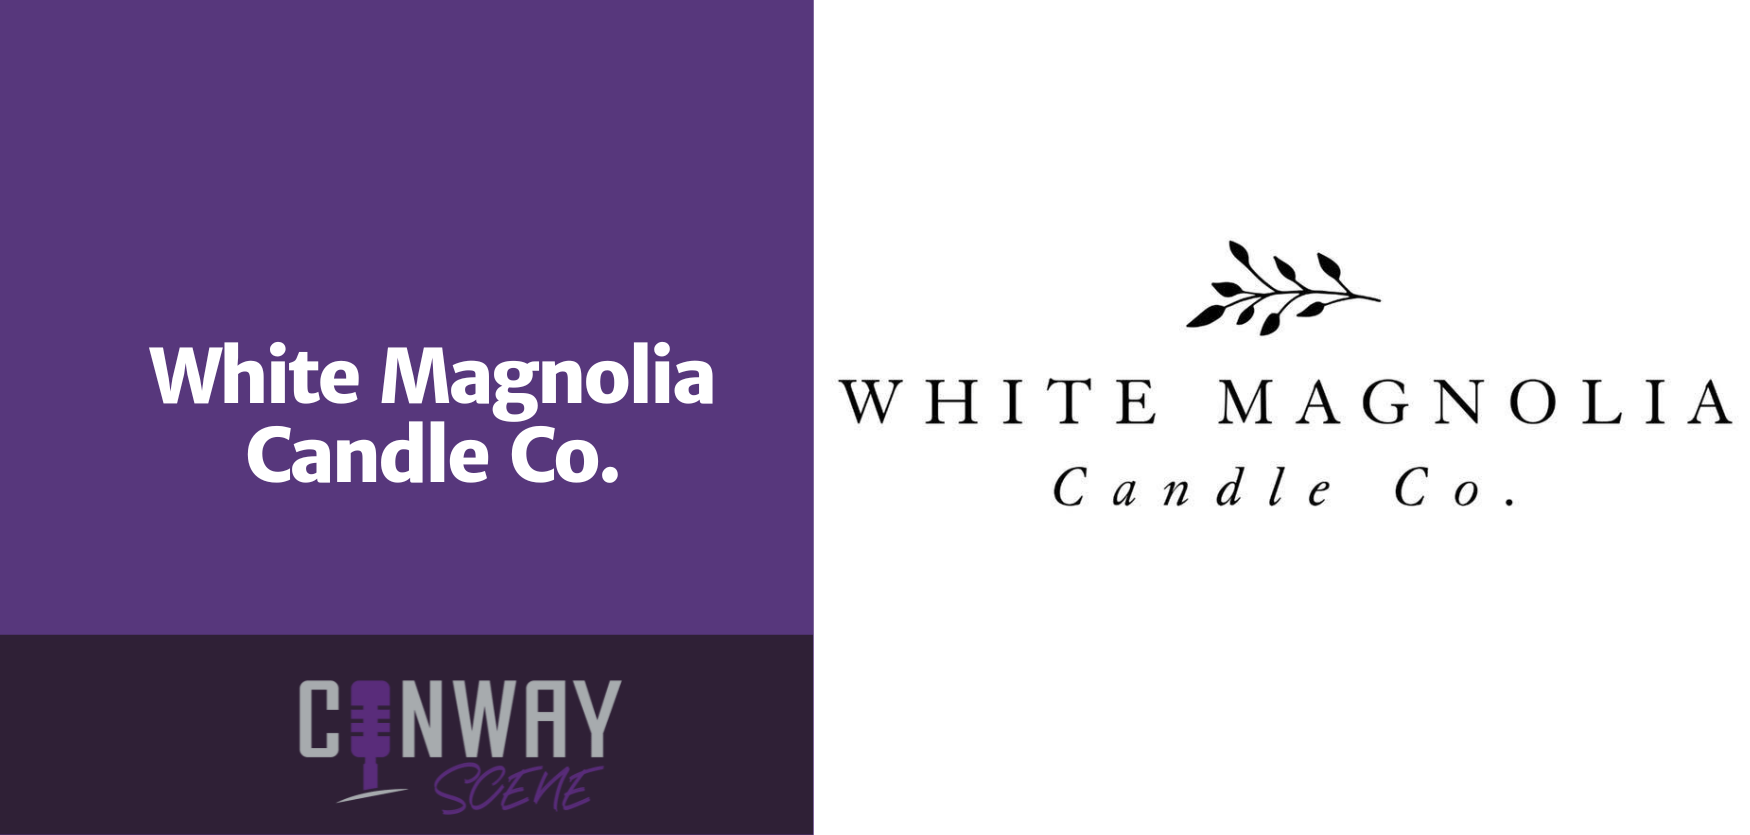 White Magnolia Candle Co.